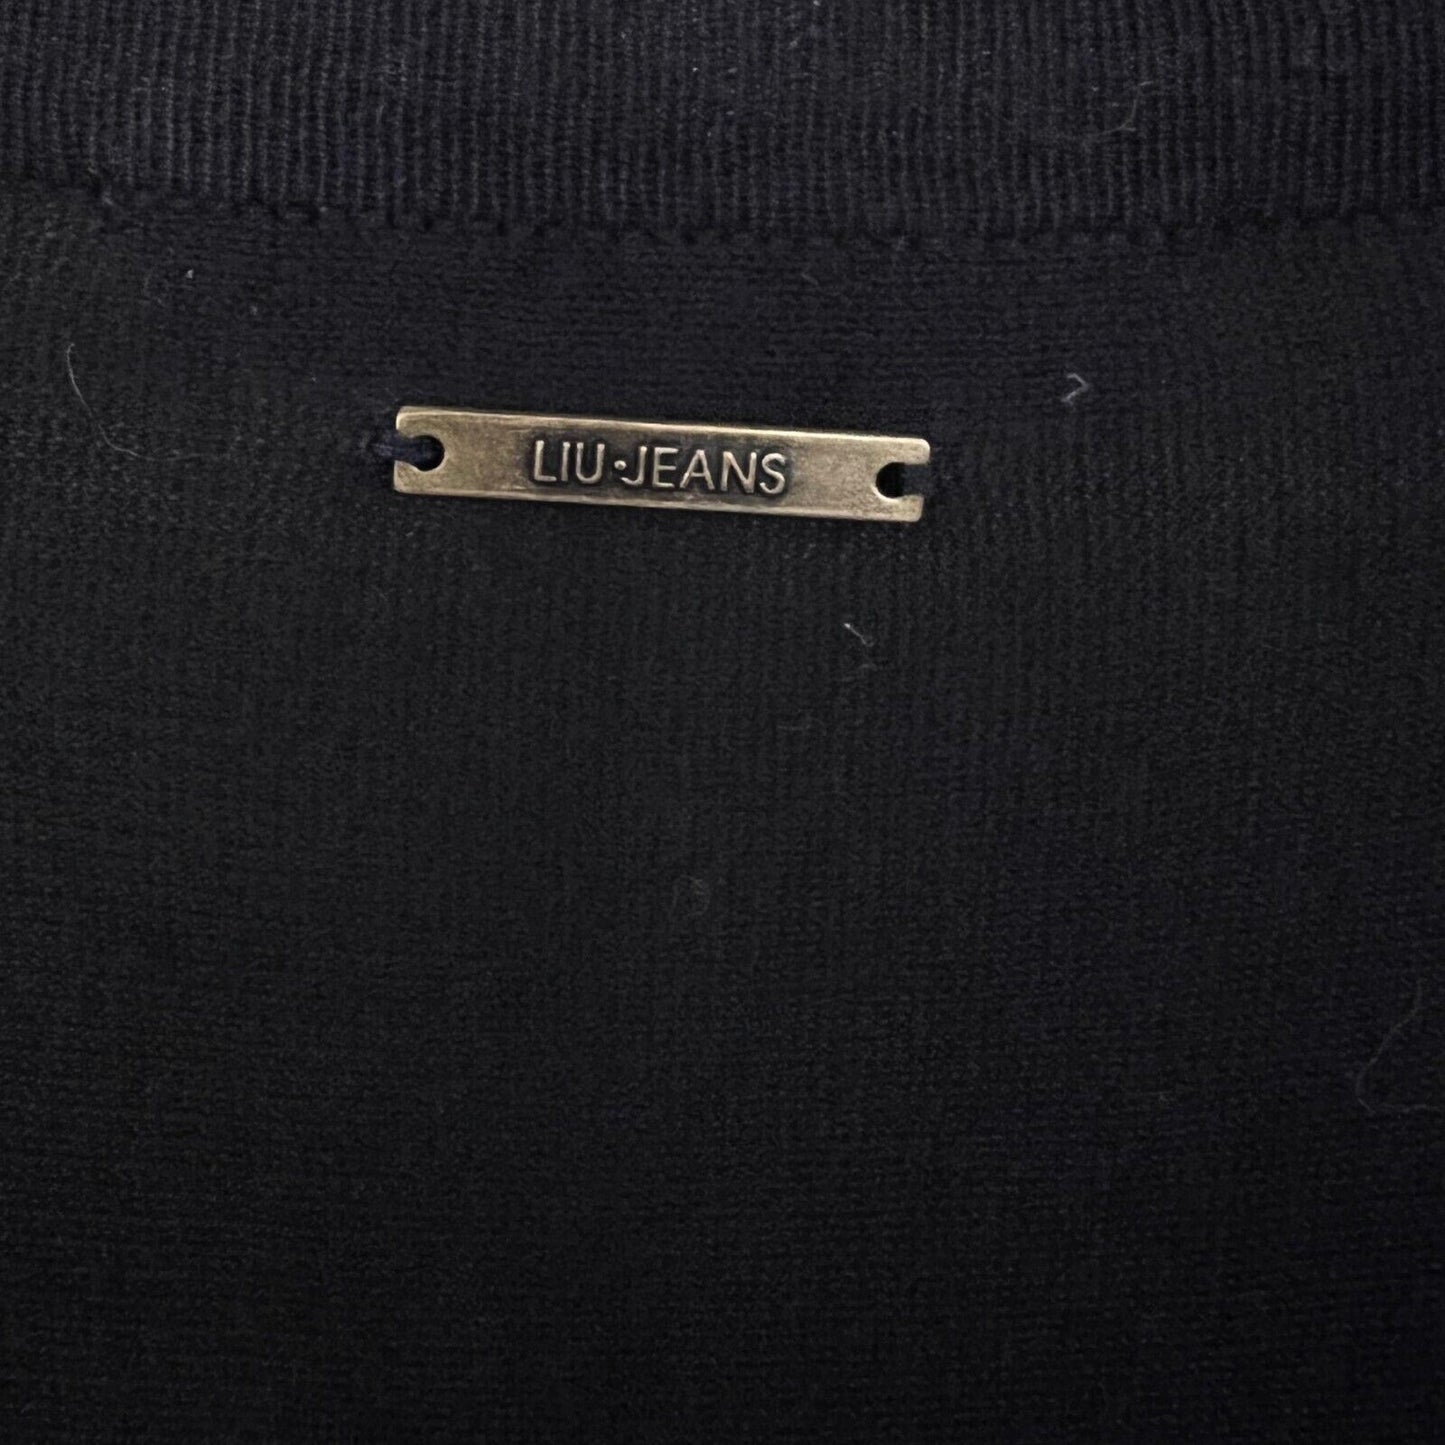 Liu Jo Jeans Navy Fine Knit Cotton Studded Jumper Dress Size S UK 8 US 4 EU 36 Timeless Fashions